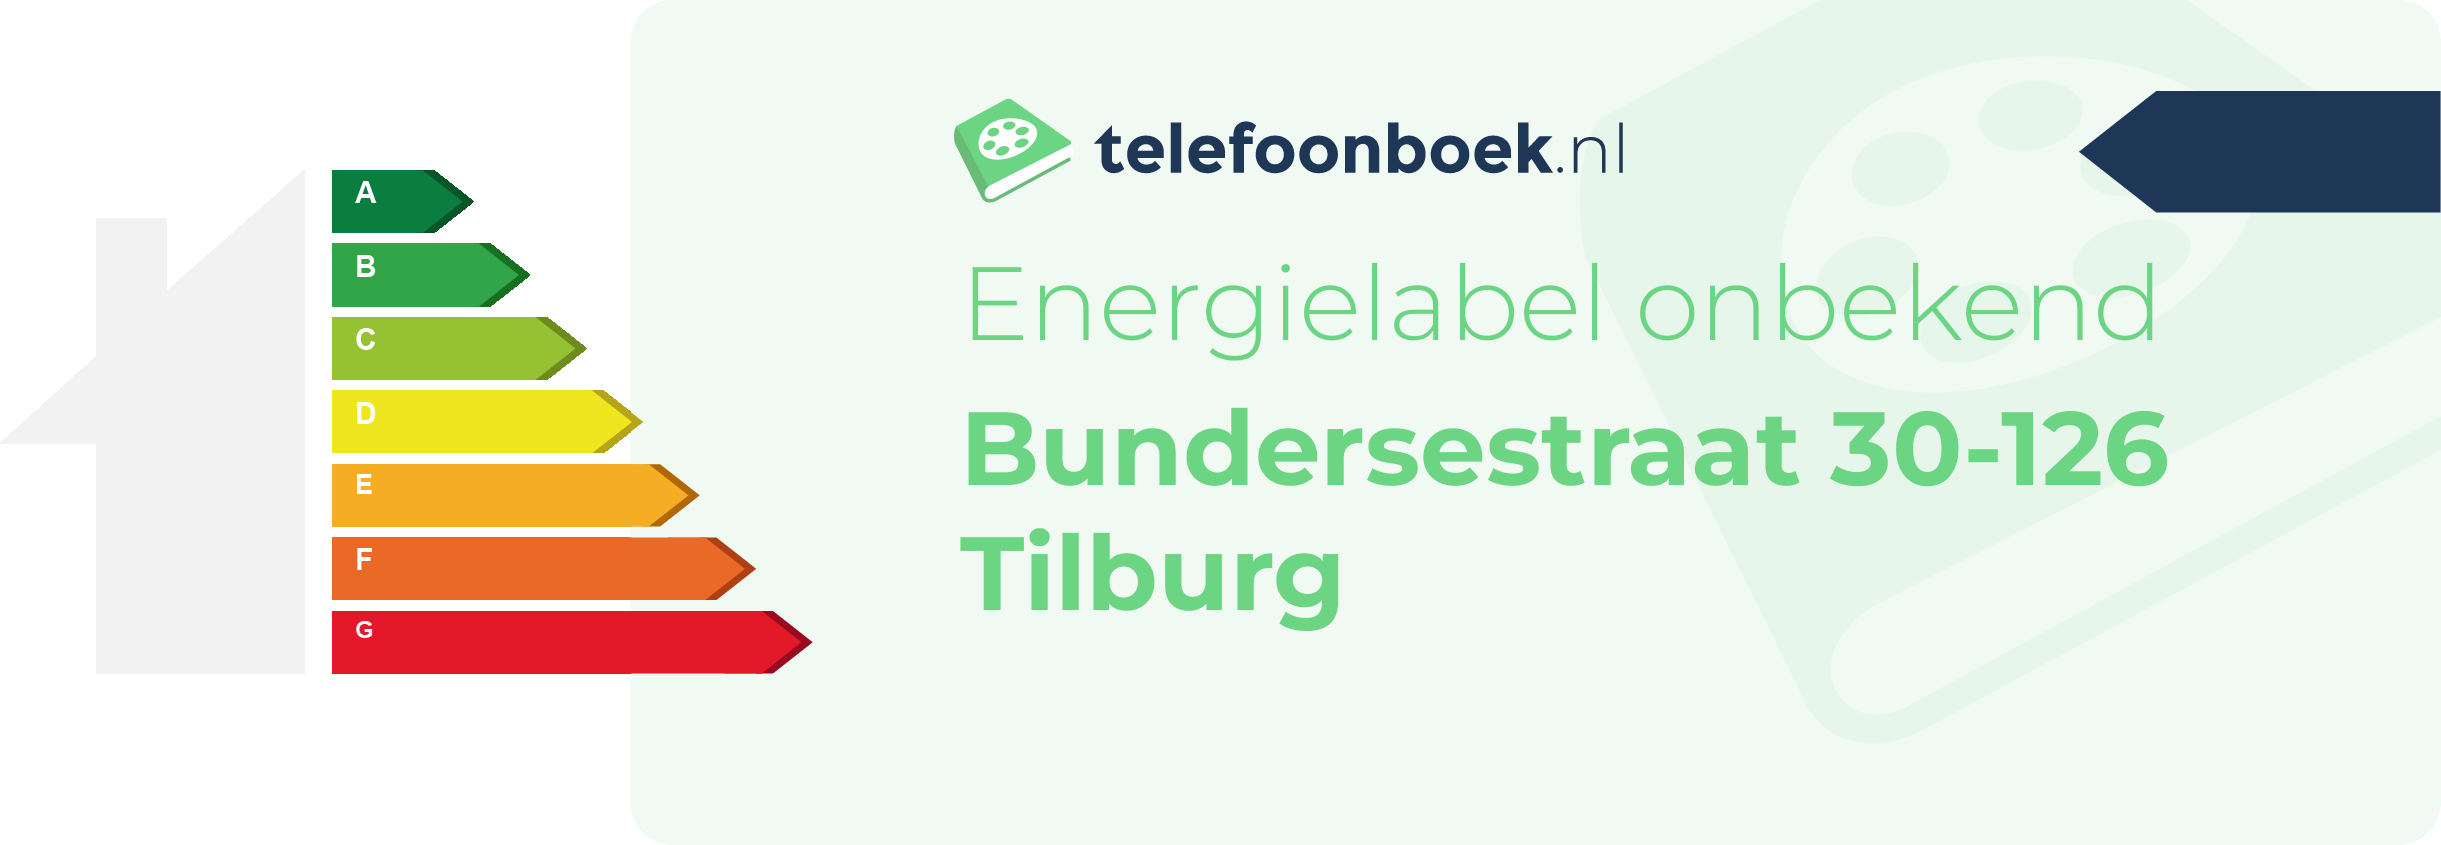 Energielabel Bundersestraat 30-126 Tilburg